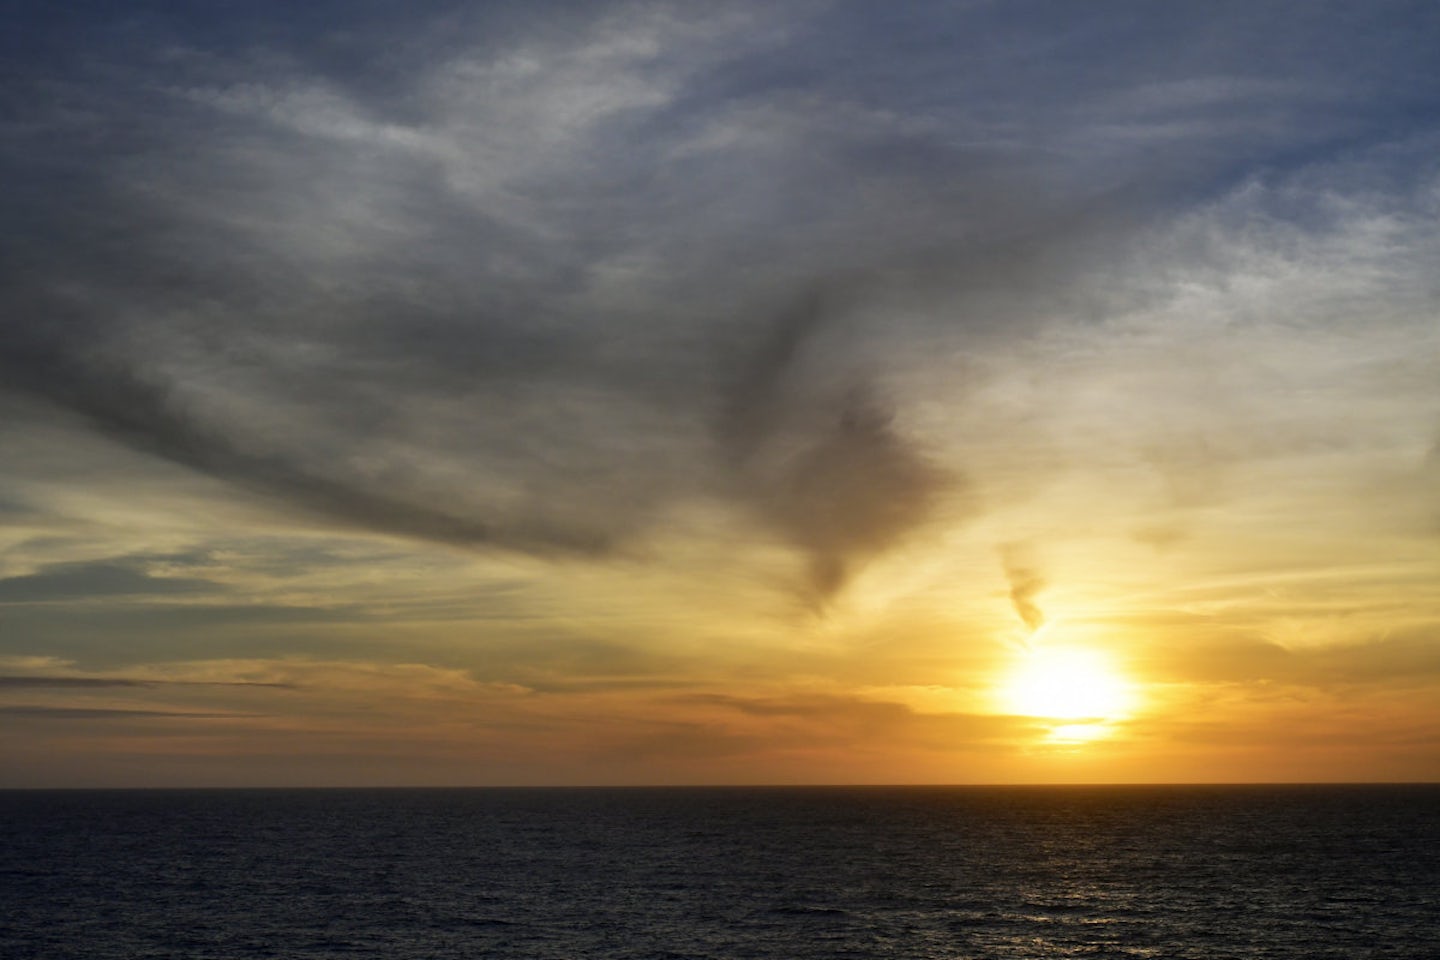 Sunset off Cabo San Lucas, Mexico Nov. 22, 2016.